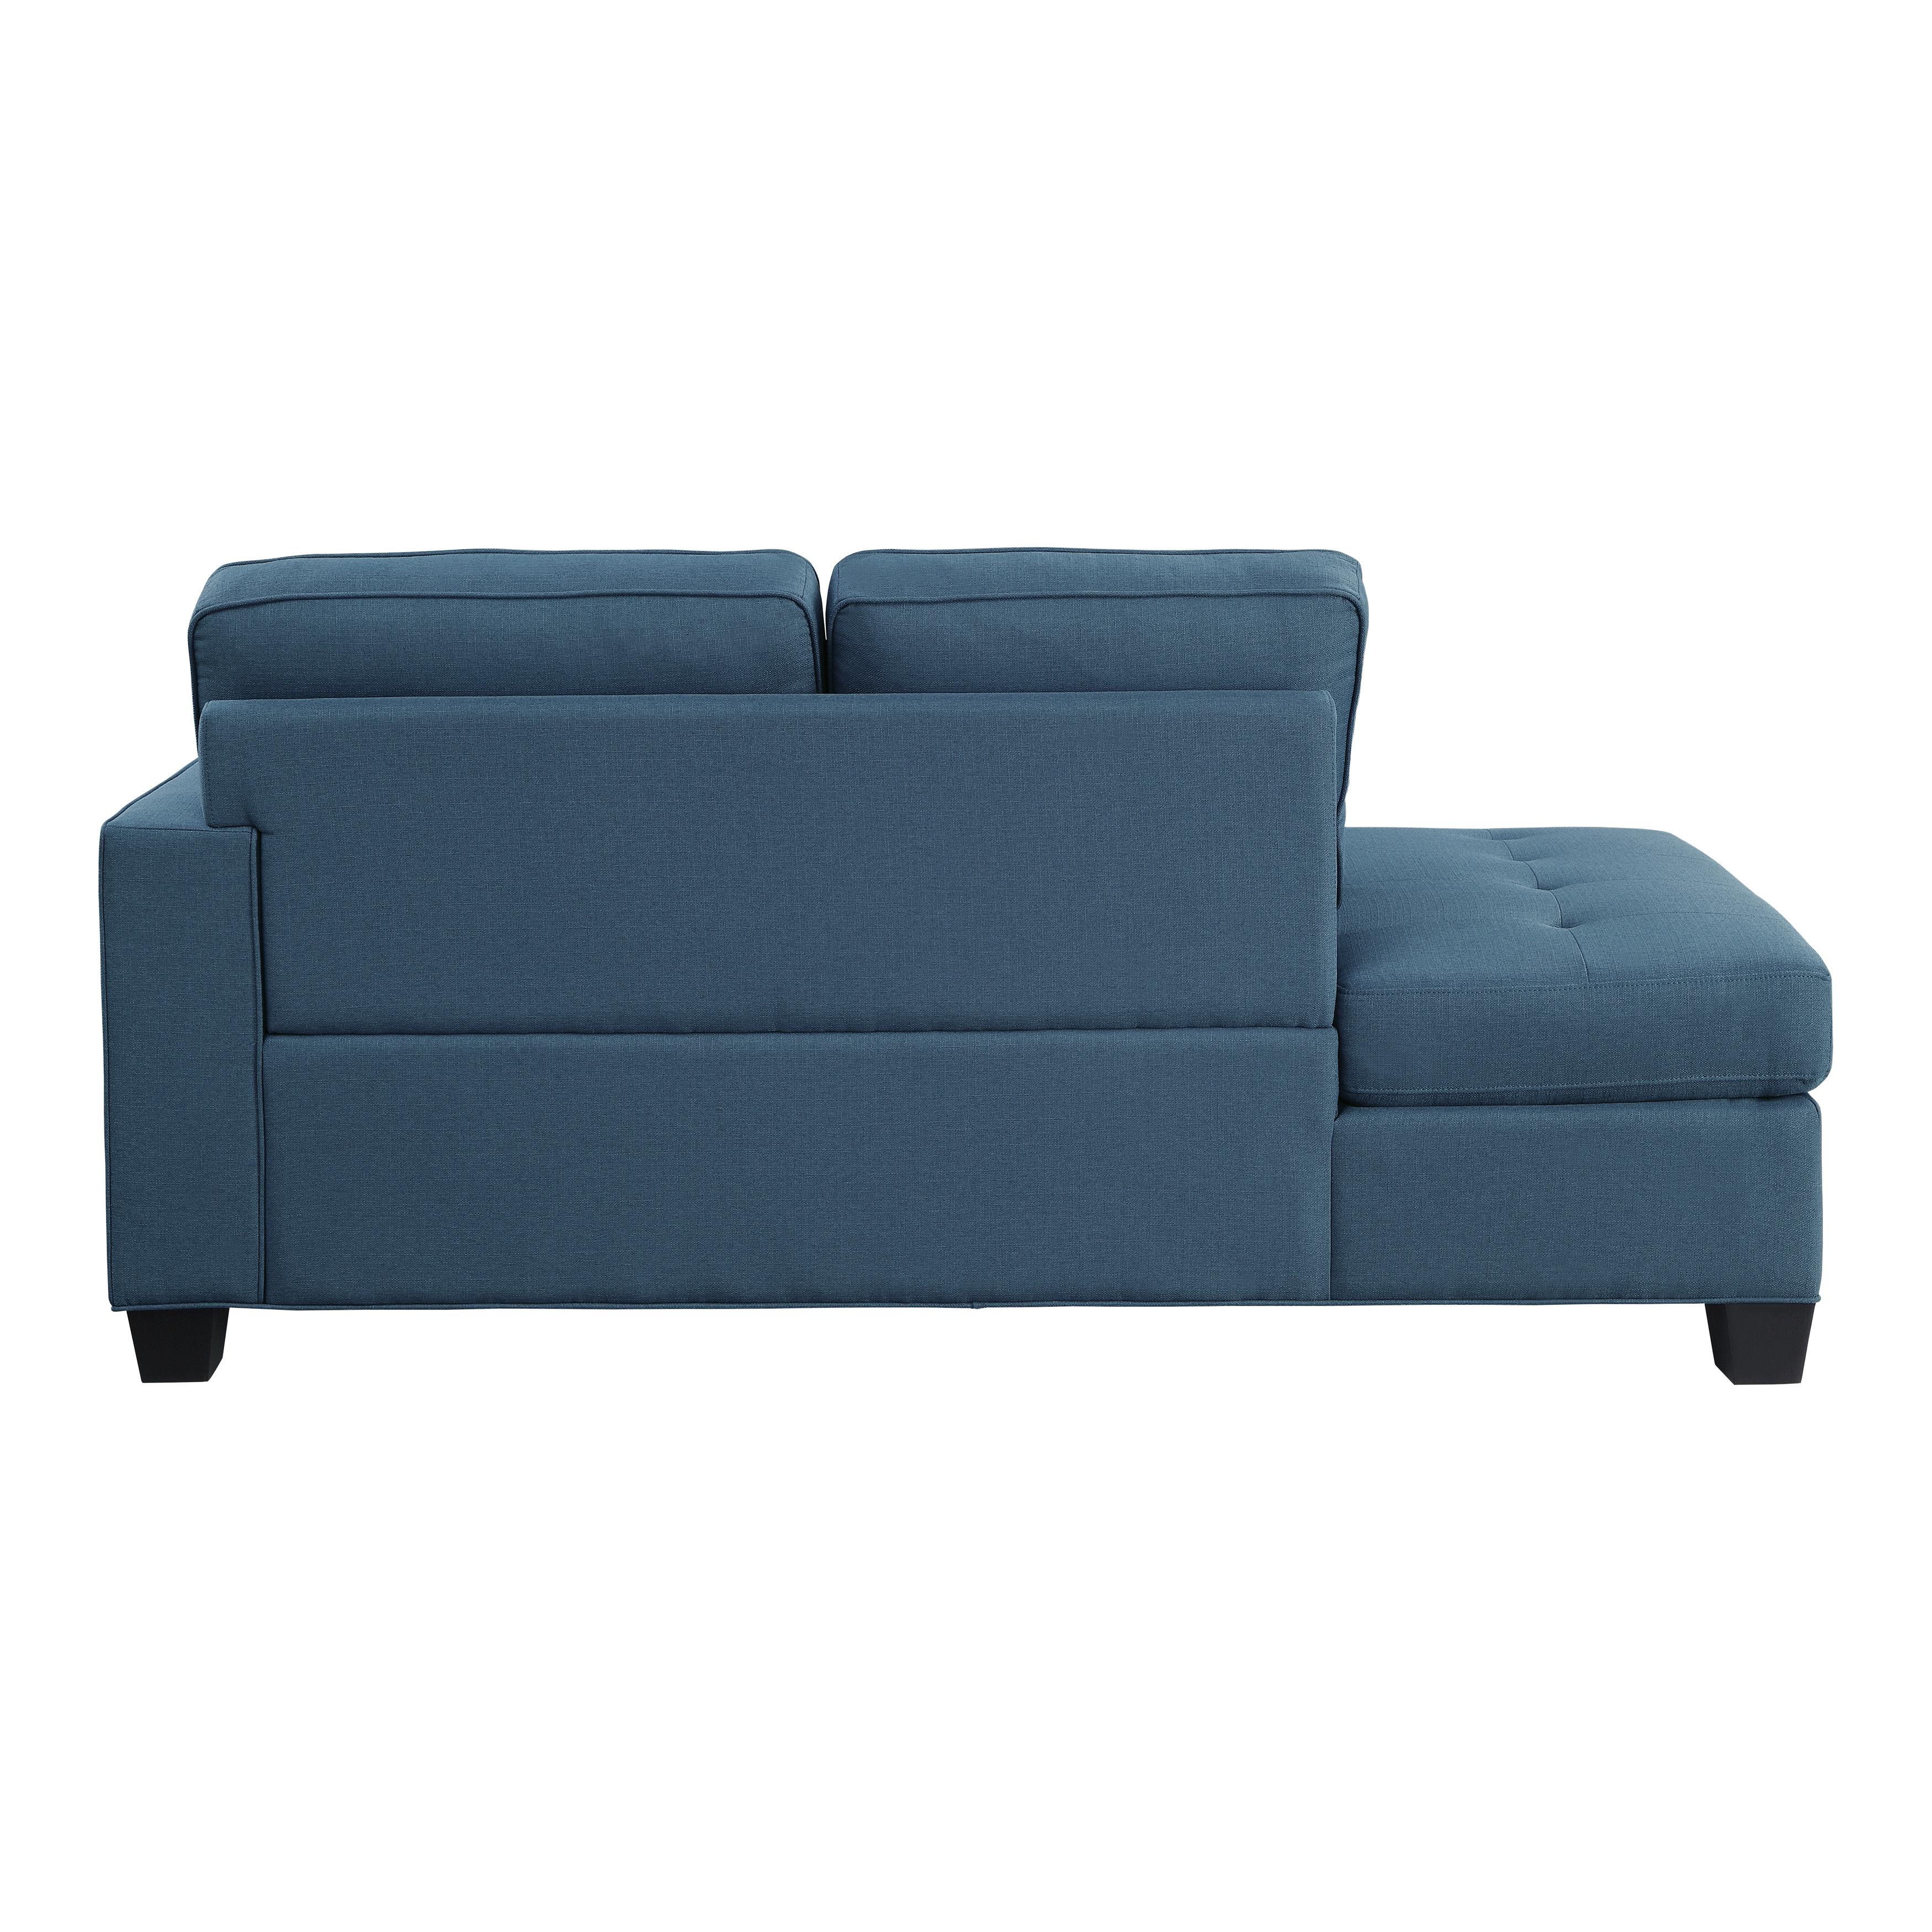 

    
Transitional Blue Solid Wood Living Room Set 3pcs Homelegance 9327BU Elmont
